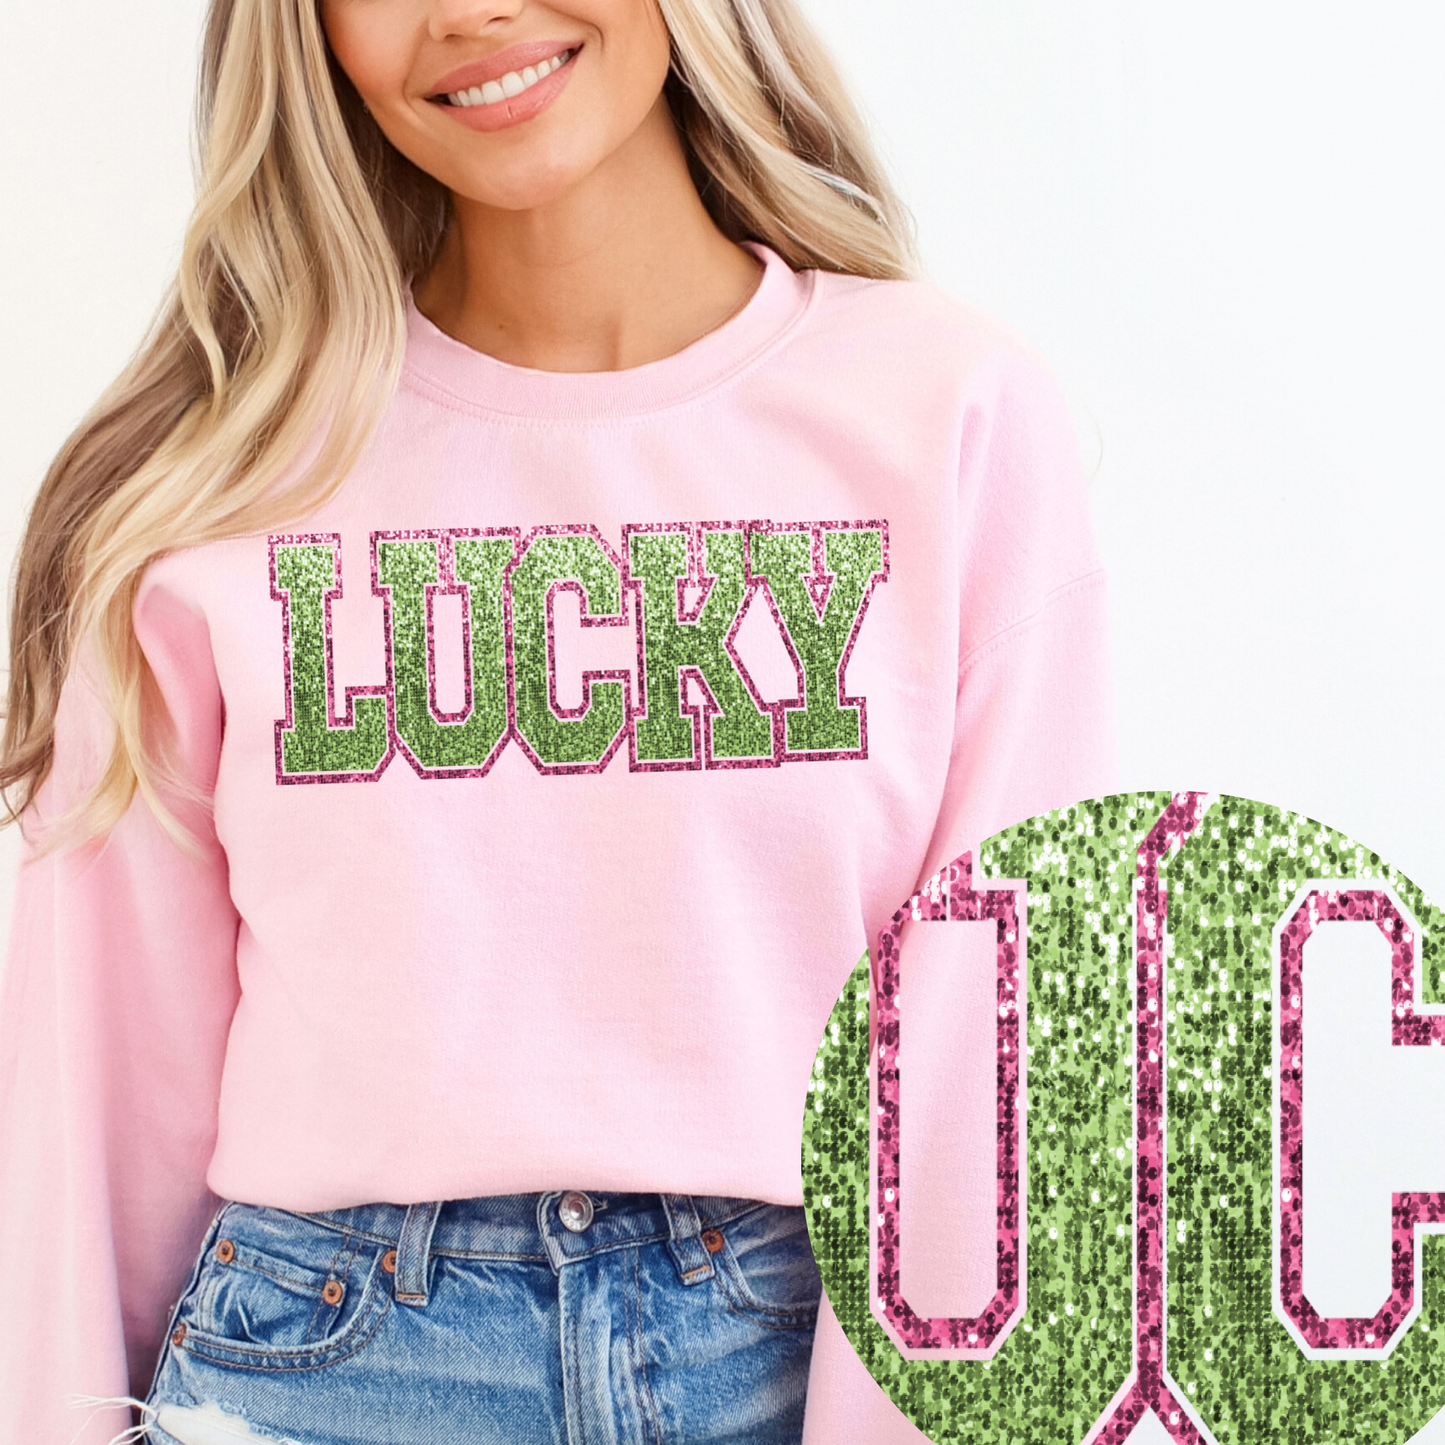 Sequin Lucky-EXCLUSIVE-Faux Sequins-Sweatshirt